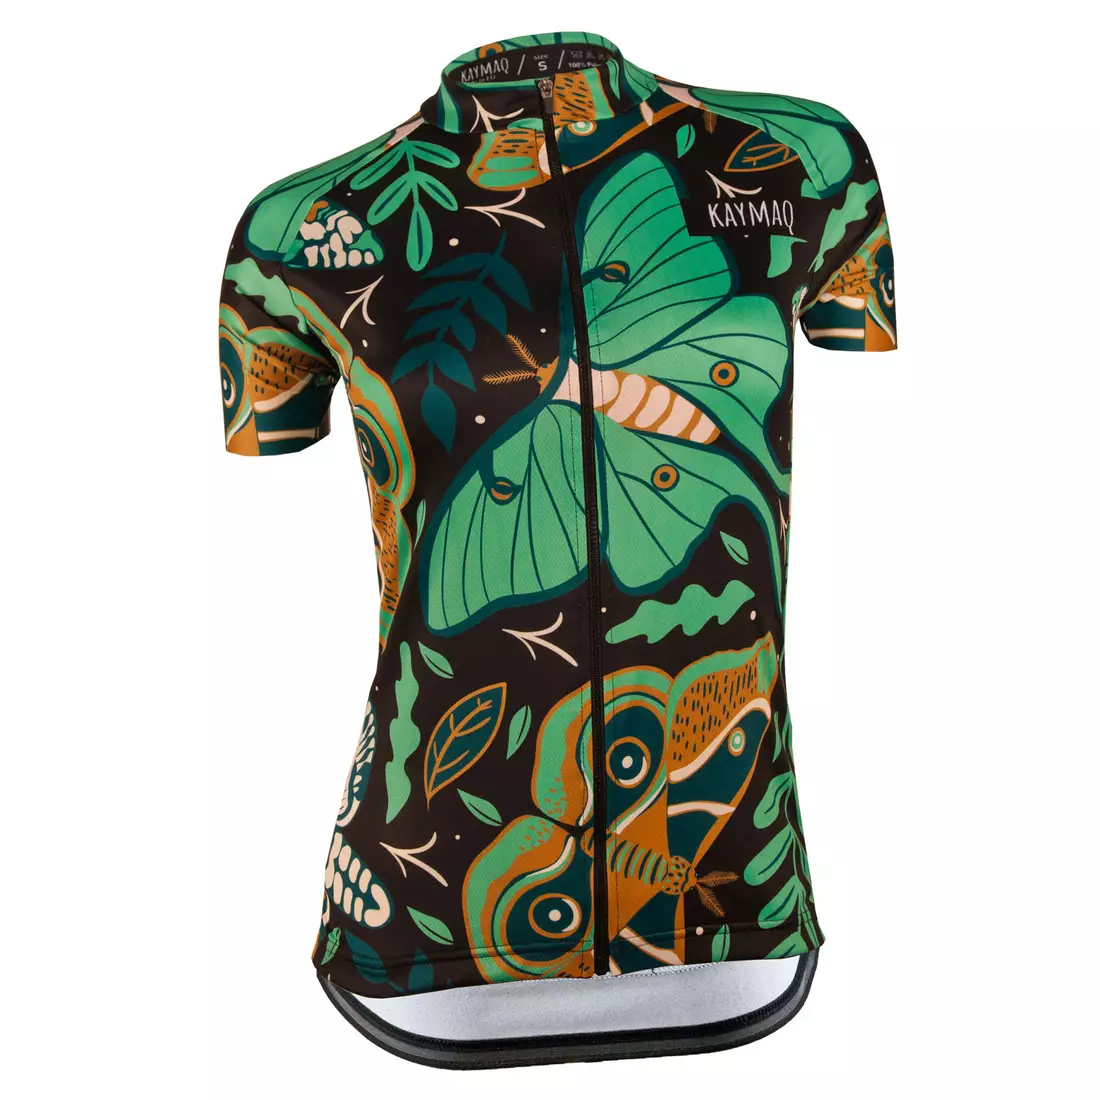 KAYMAQ DESIGN W16 dámský cyklistický dres s krátkým rukávem